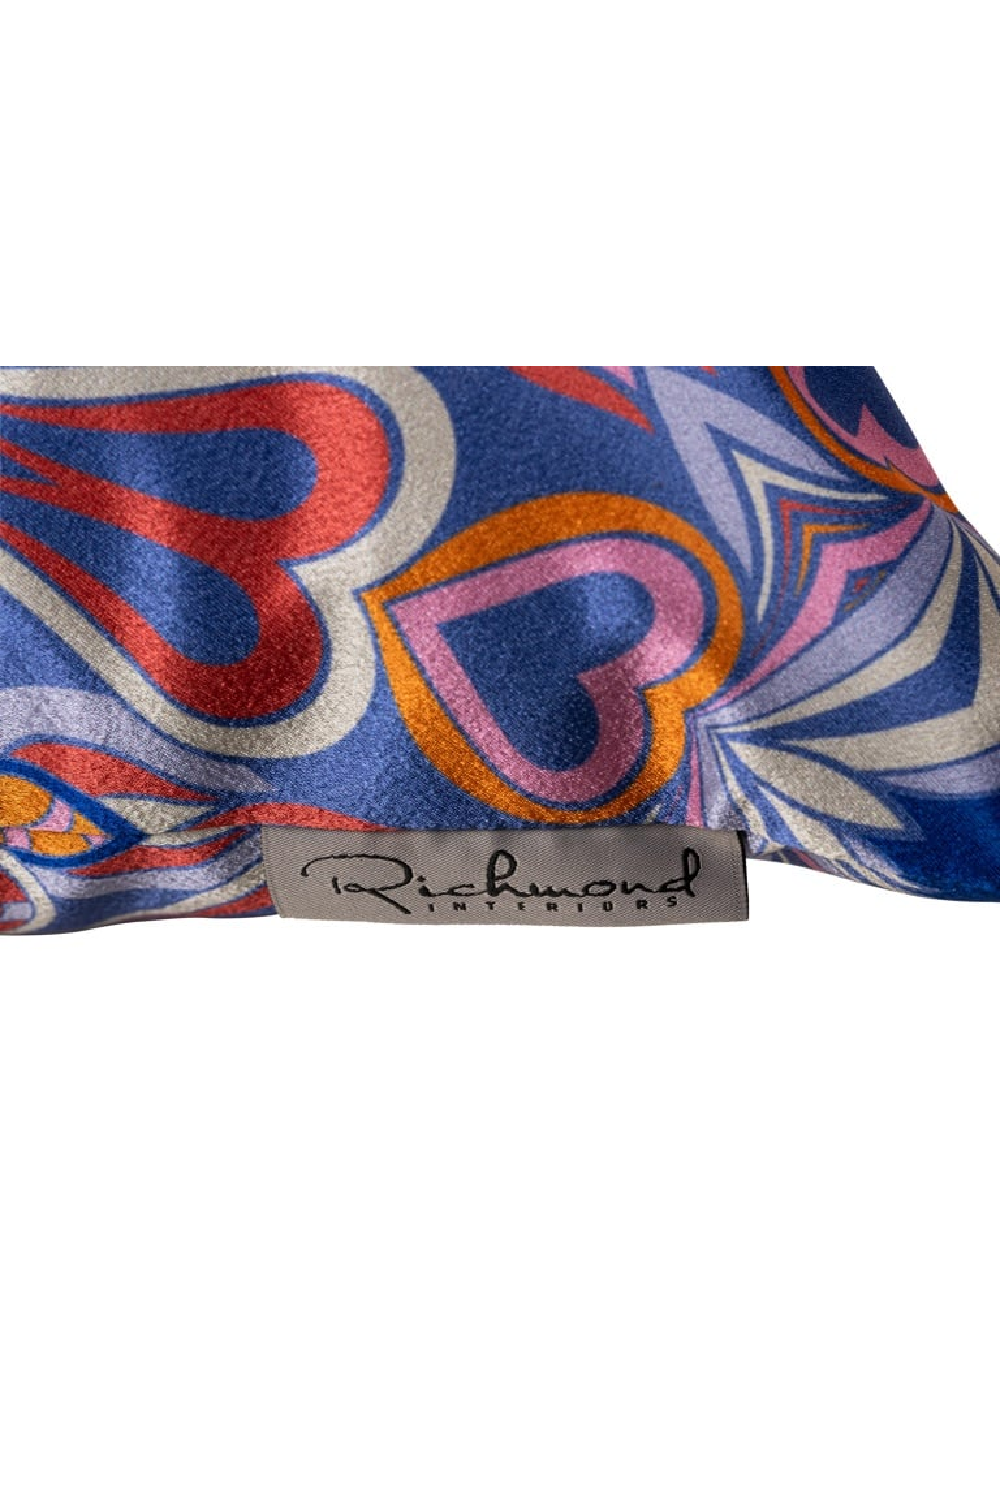 Multicolored Paisley Patterned Pillow | OROA Melany | Oroa.com